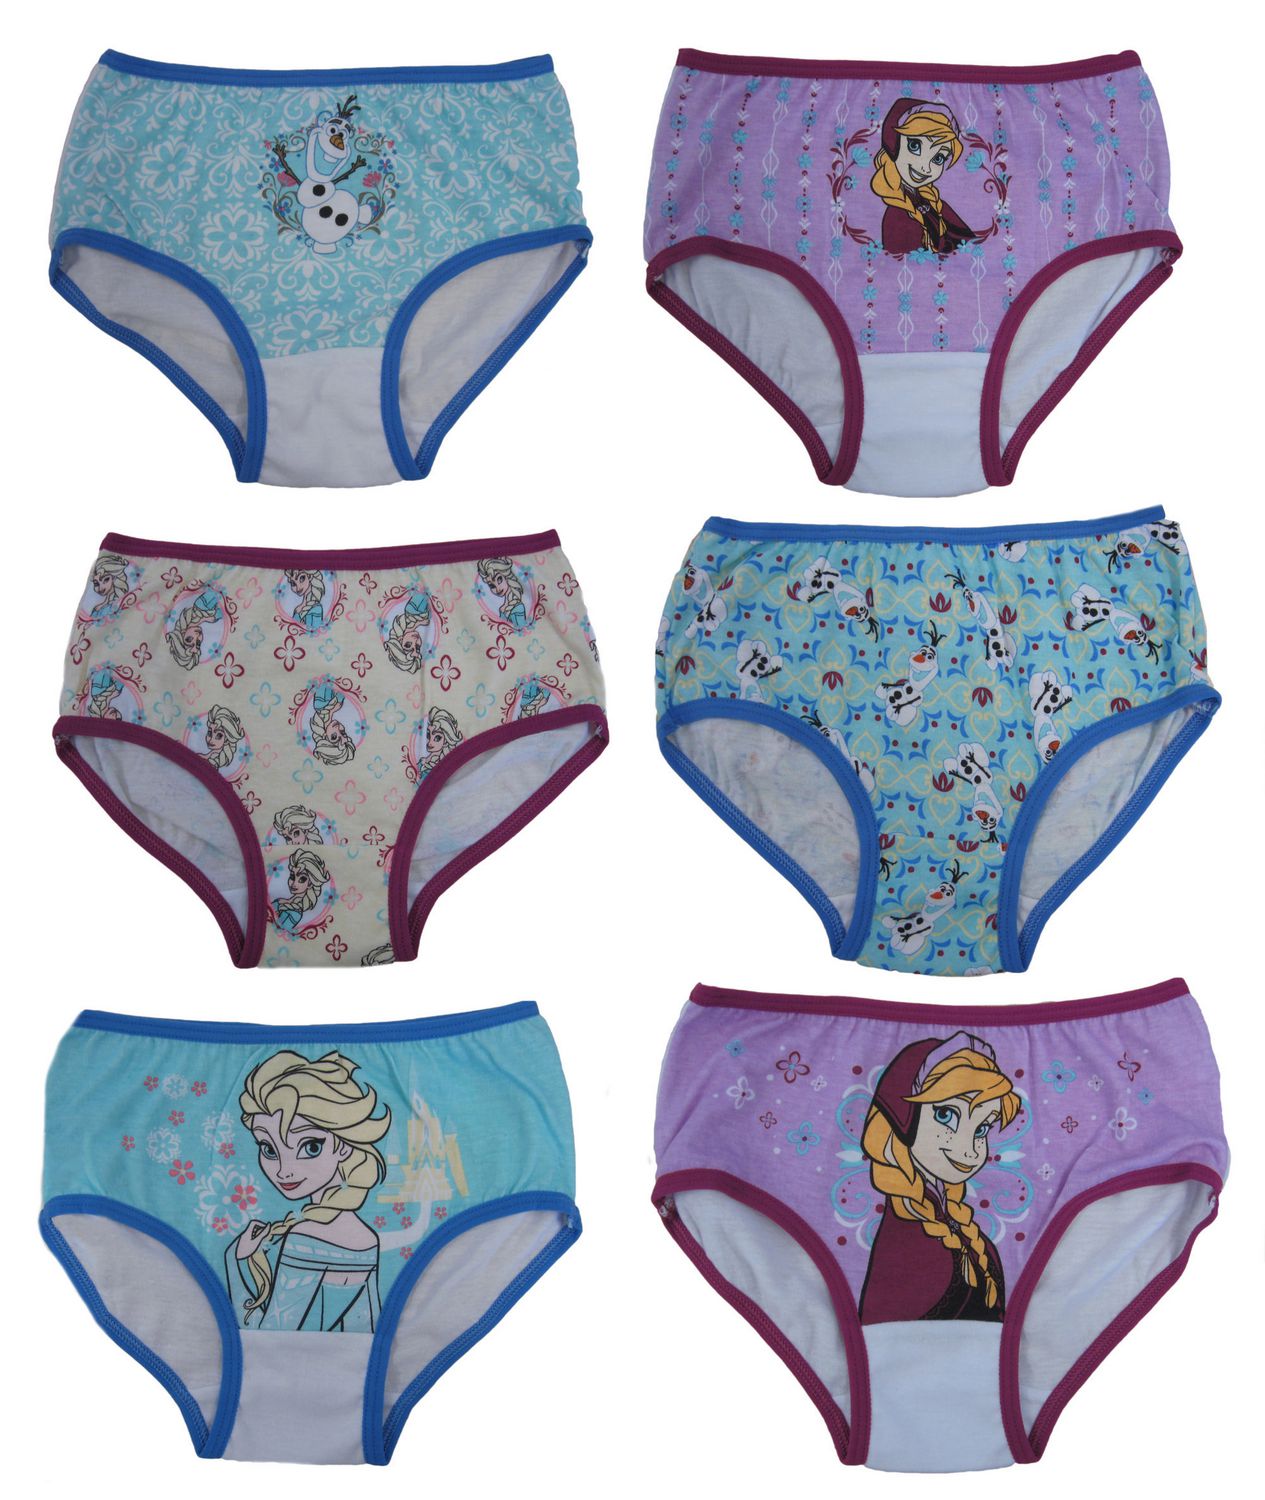 Frozen Underwar Pack of 5Girls Disney Frozen UndiesDisney Princess Pants 